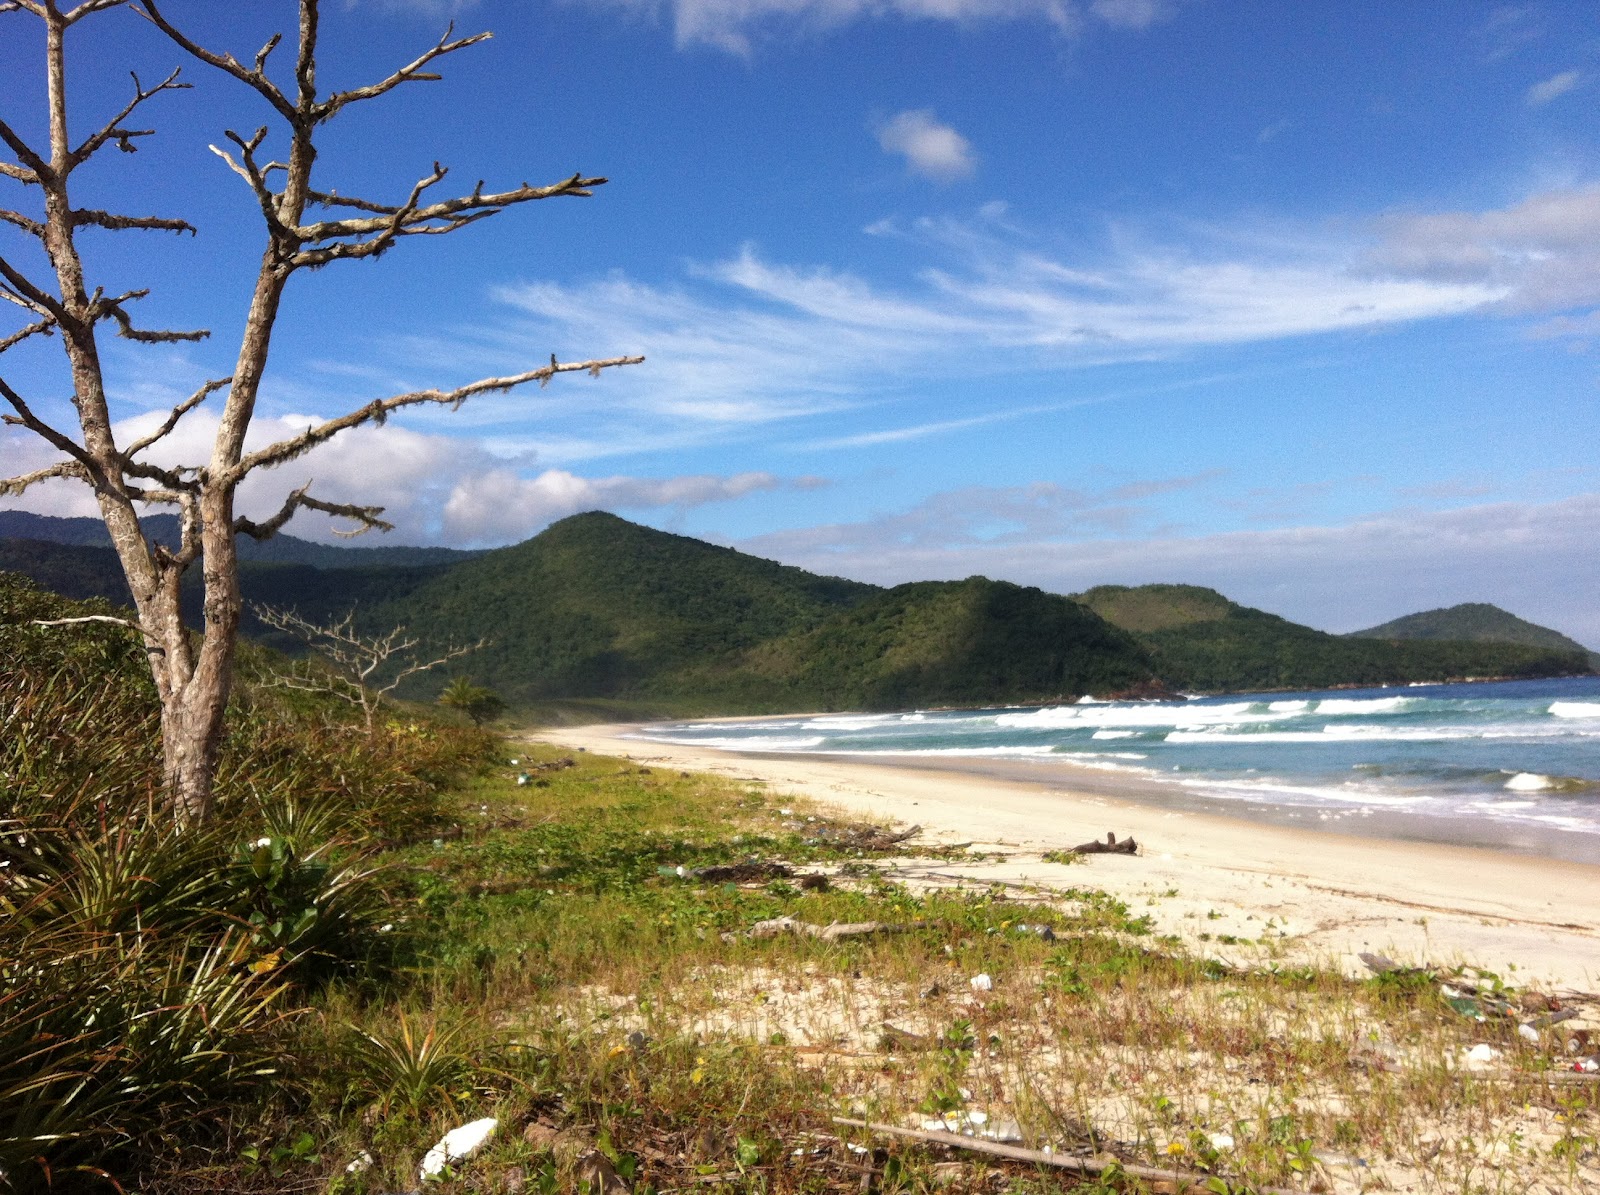 Fotografie cu Praia do Leste amplasat într-o zonă naturală